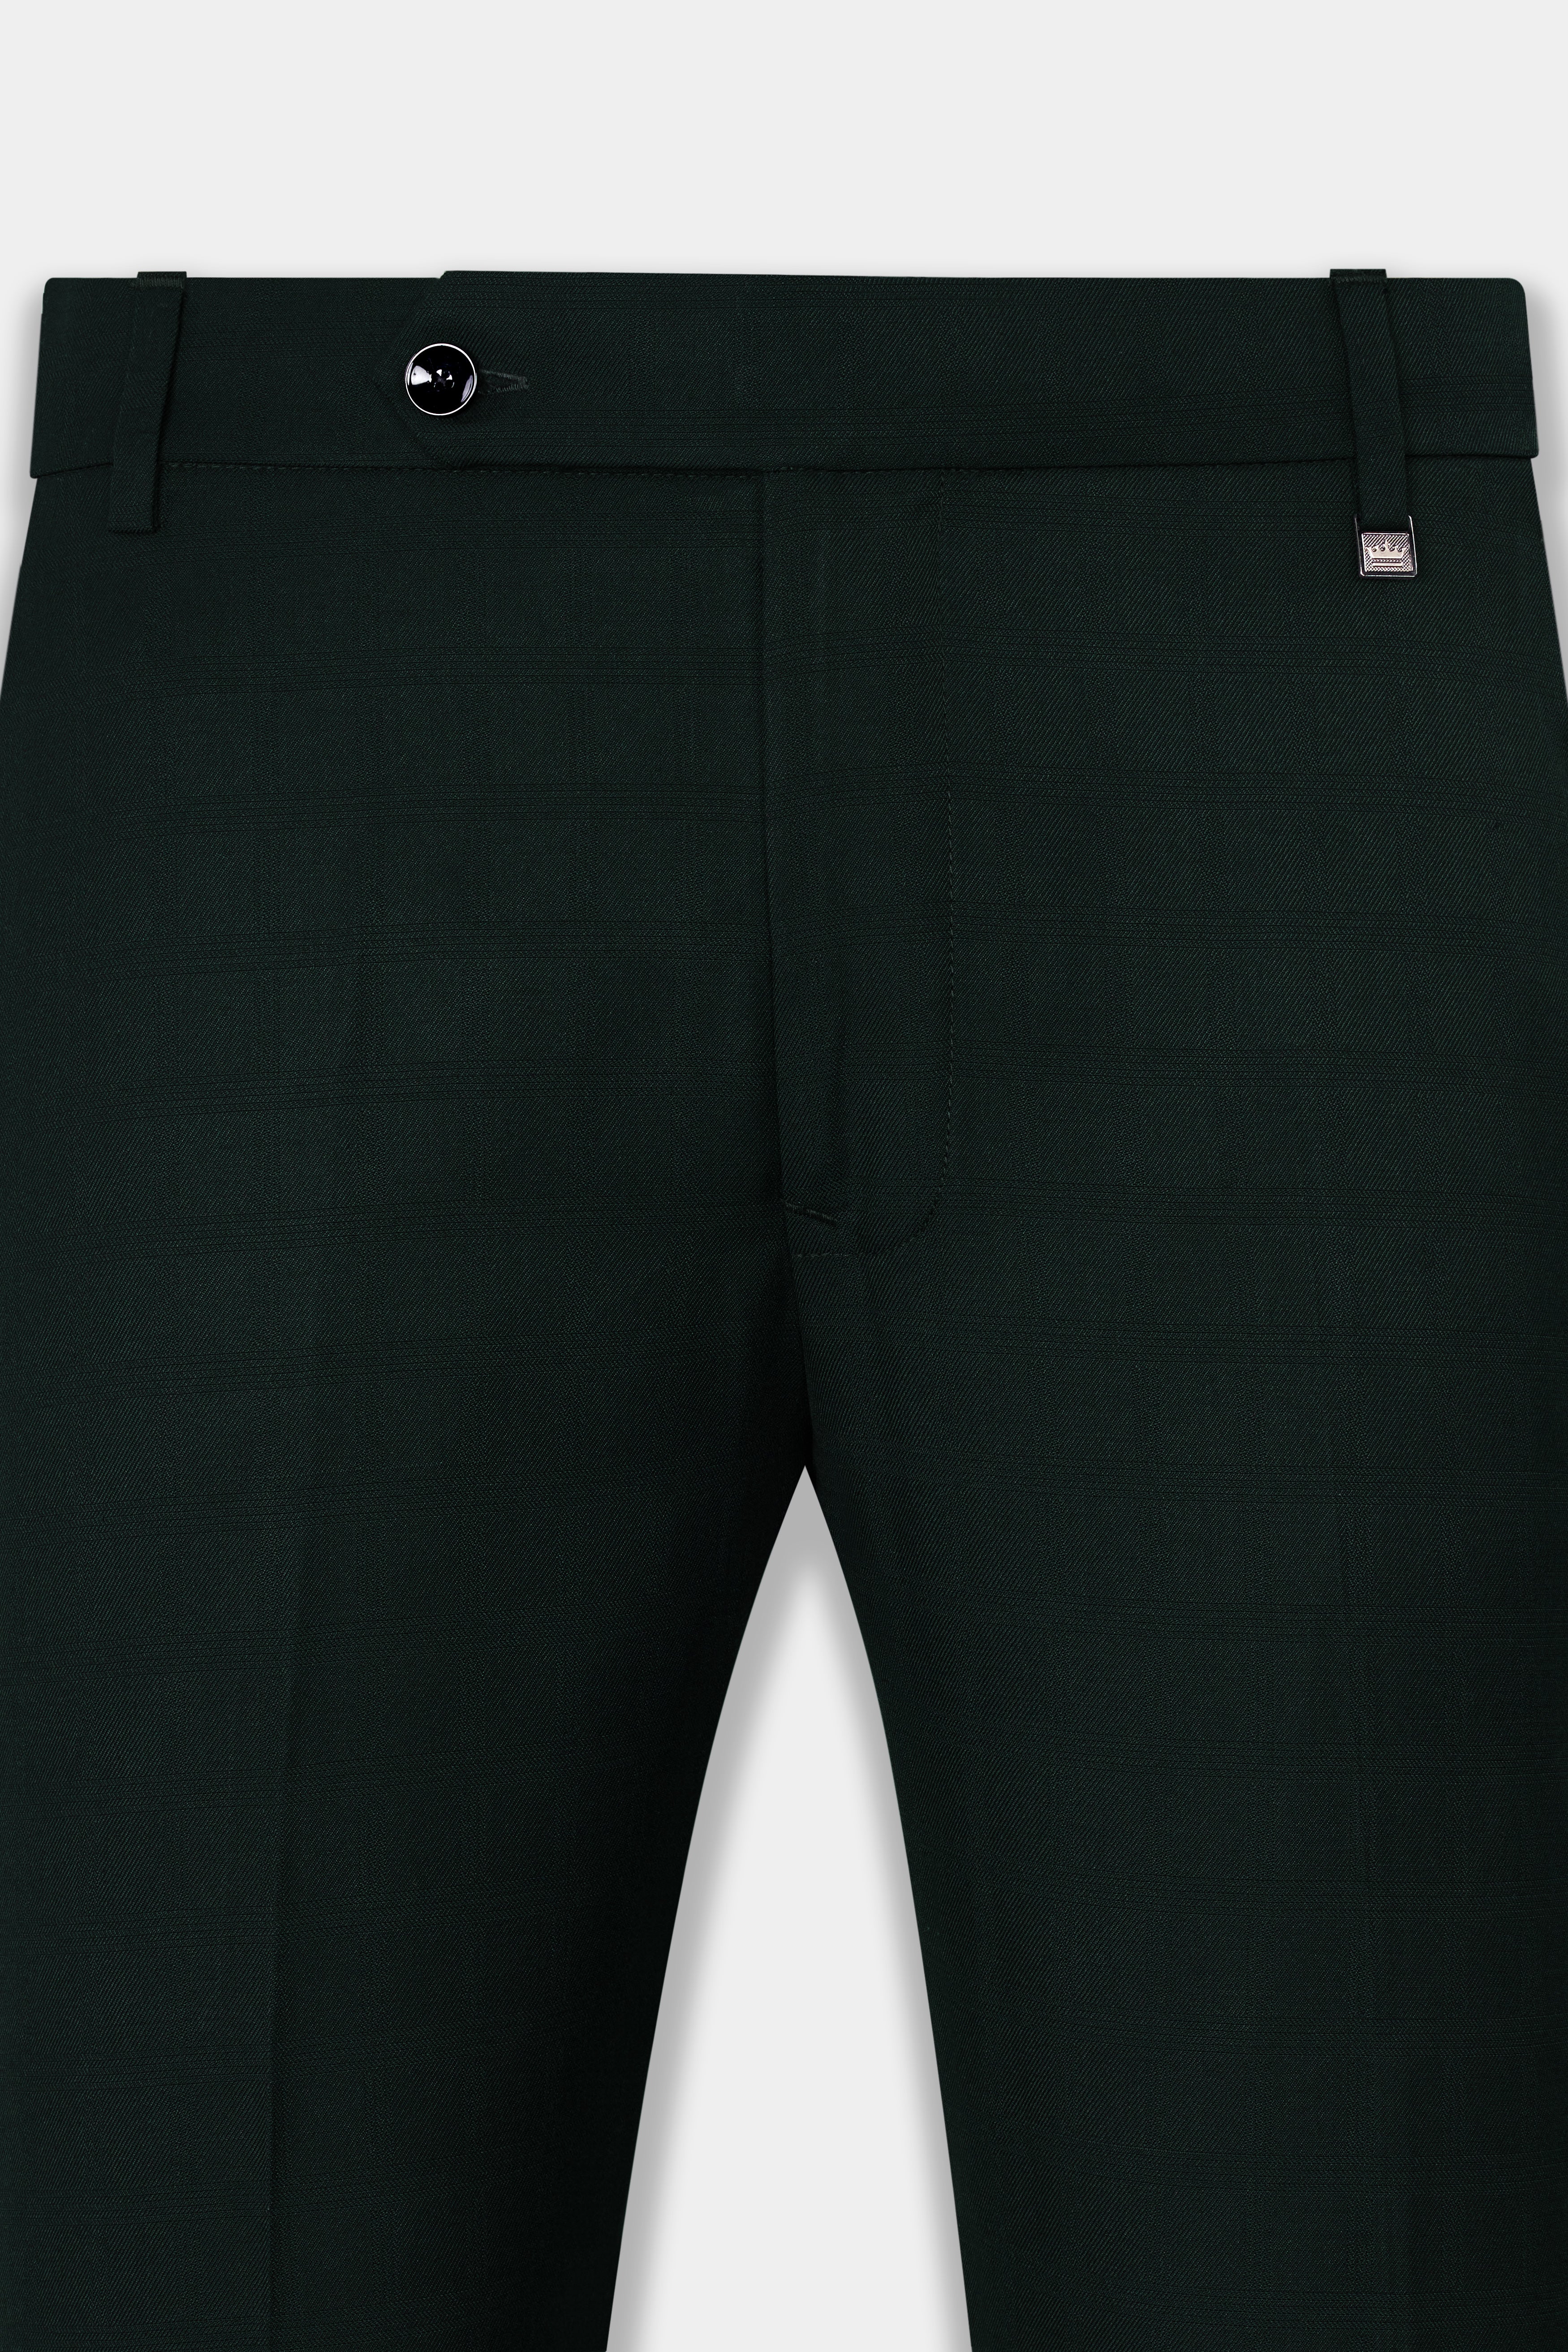 Kaitoke Green Wool Rich Pant T2821-28, T2821-30, T2821-32, T2821-34, T2821-36, T2821-38, T2821-40, T2821-42, T2821-44